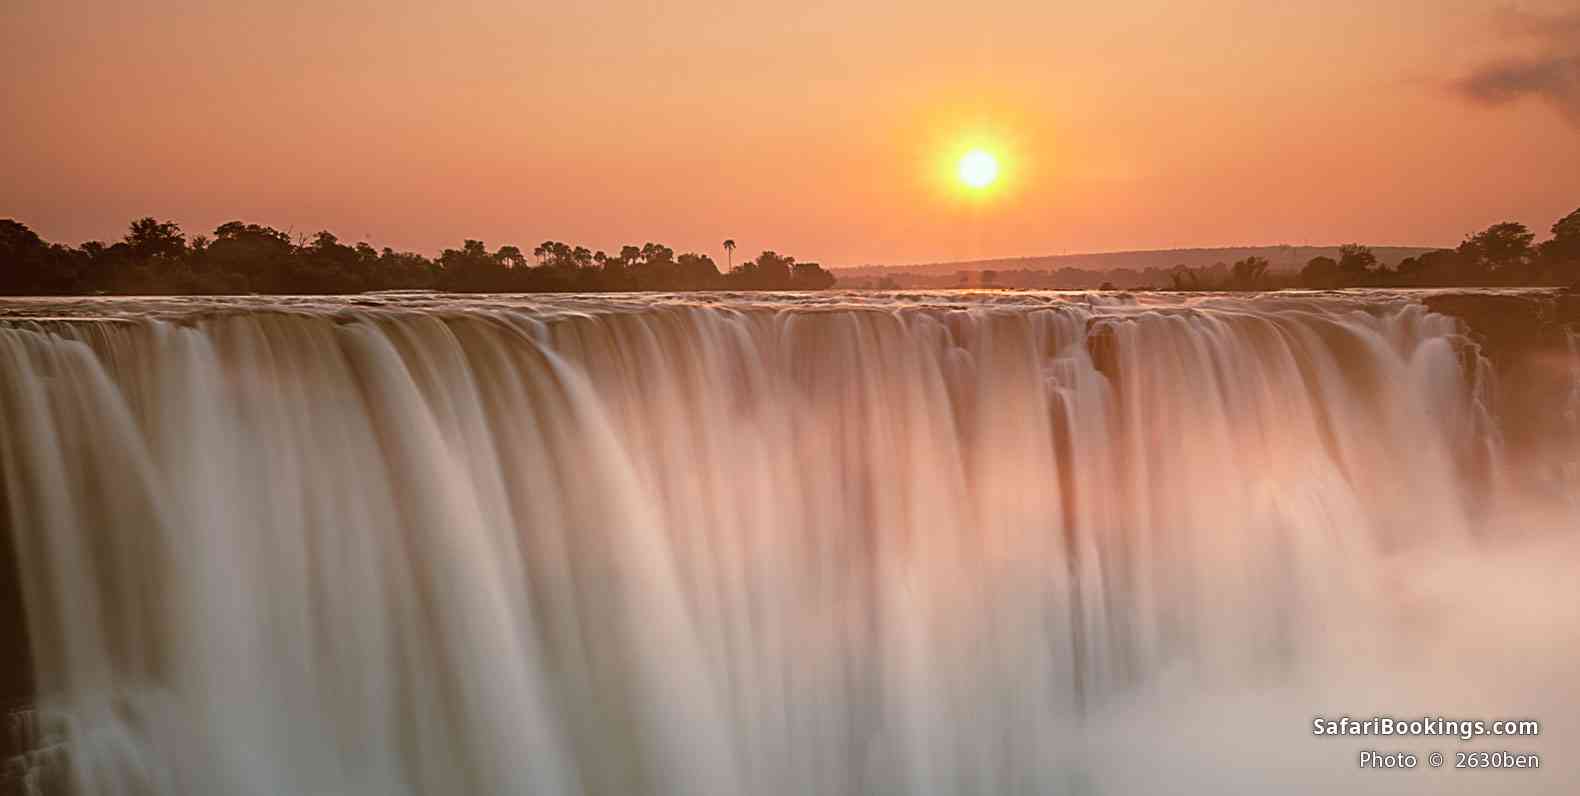 Sunrise over the falls, Zimbabwe